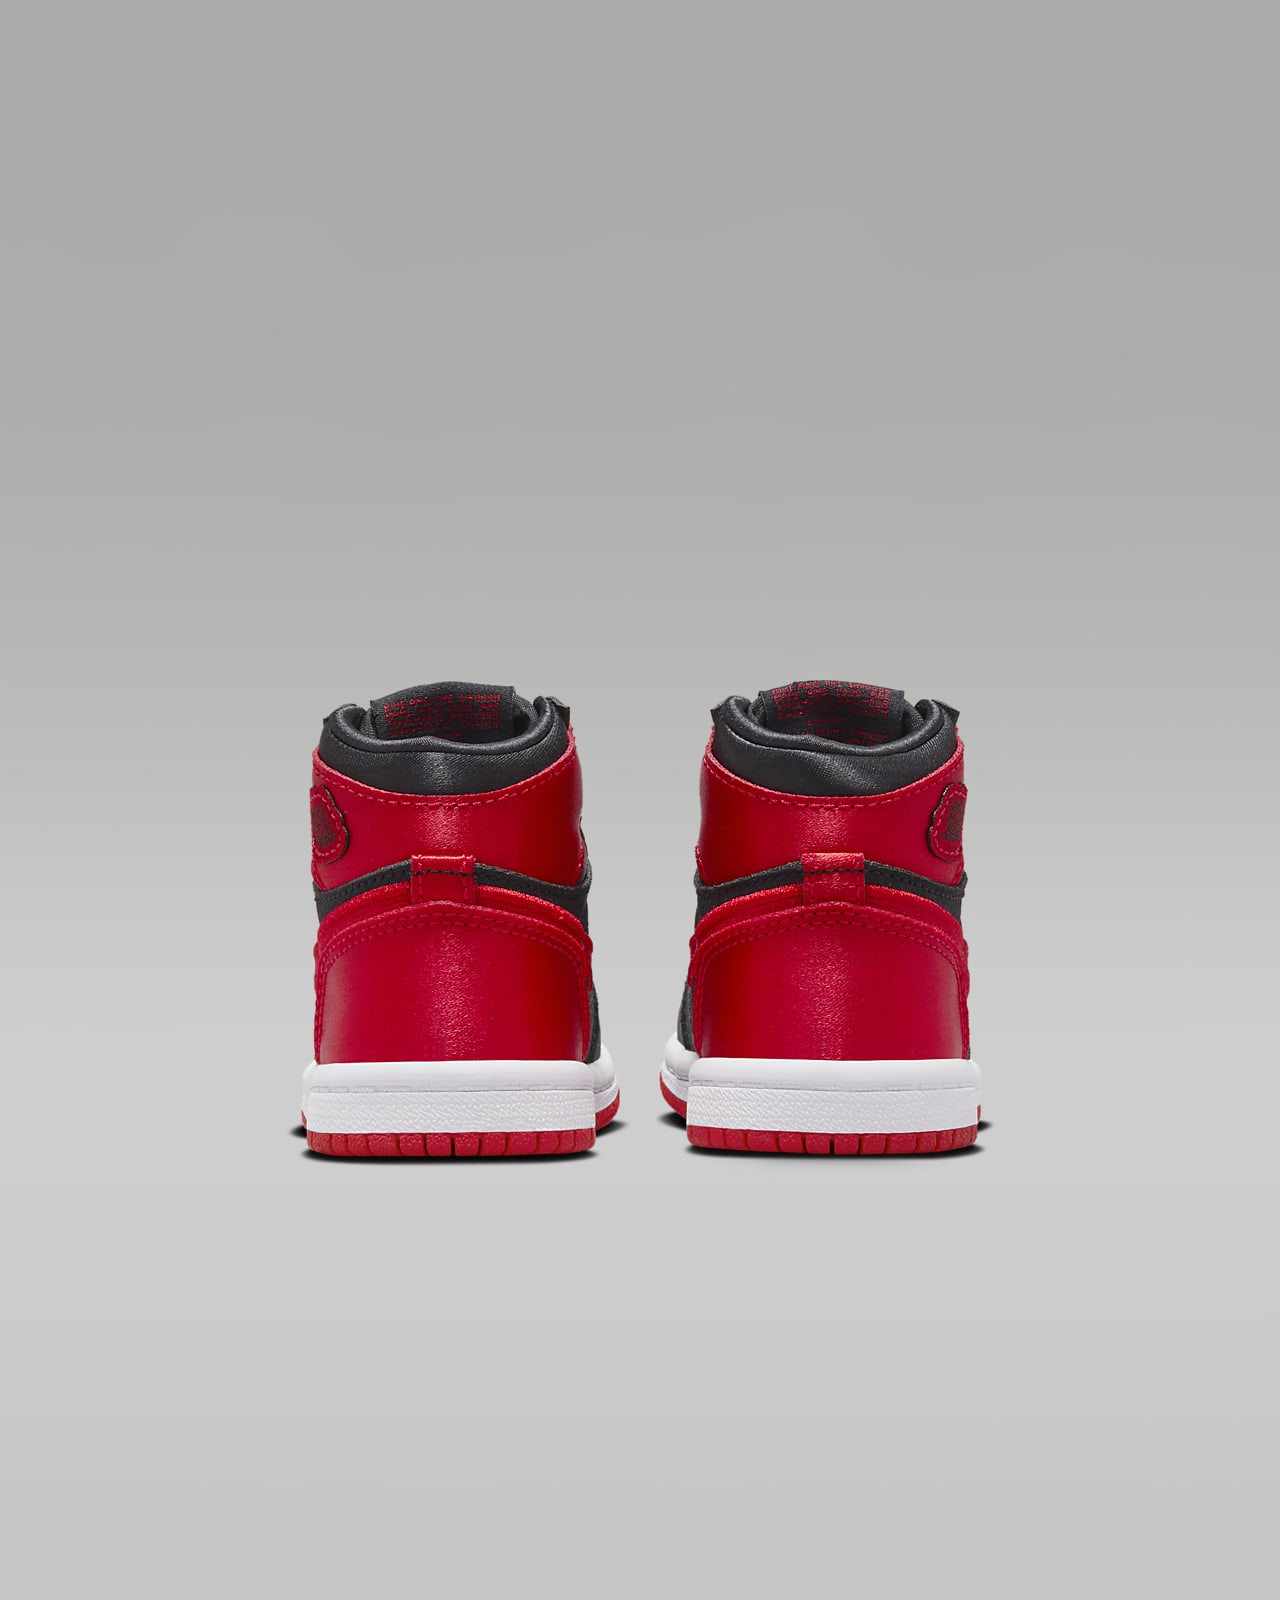 Jordan 1 Retro High OG Zapatillas - Niño/a pequeño/a. Nike ES